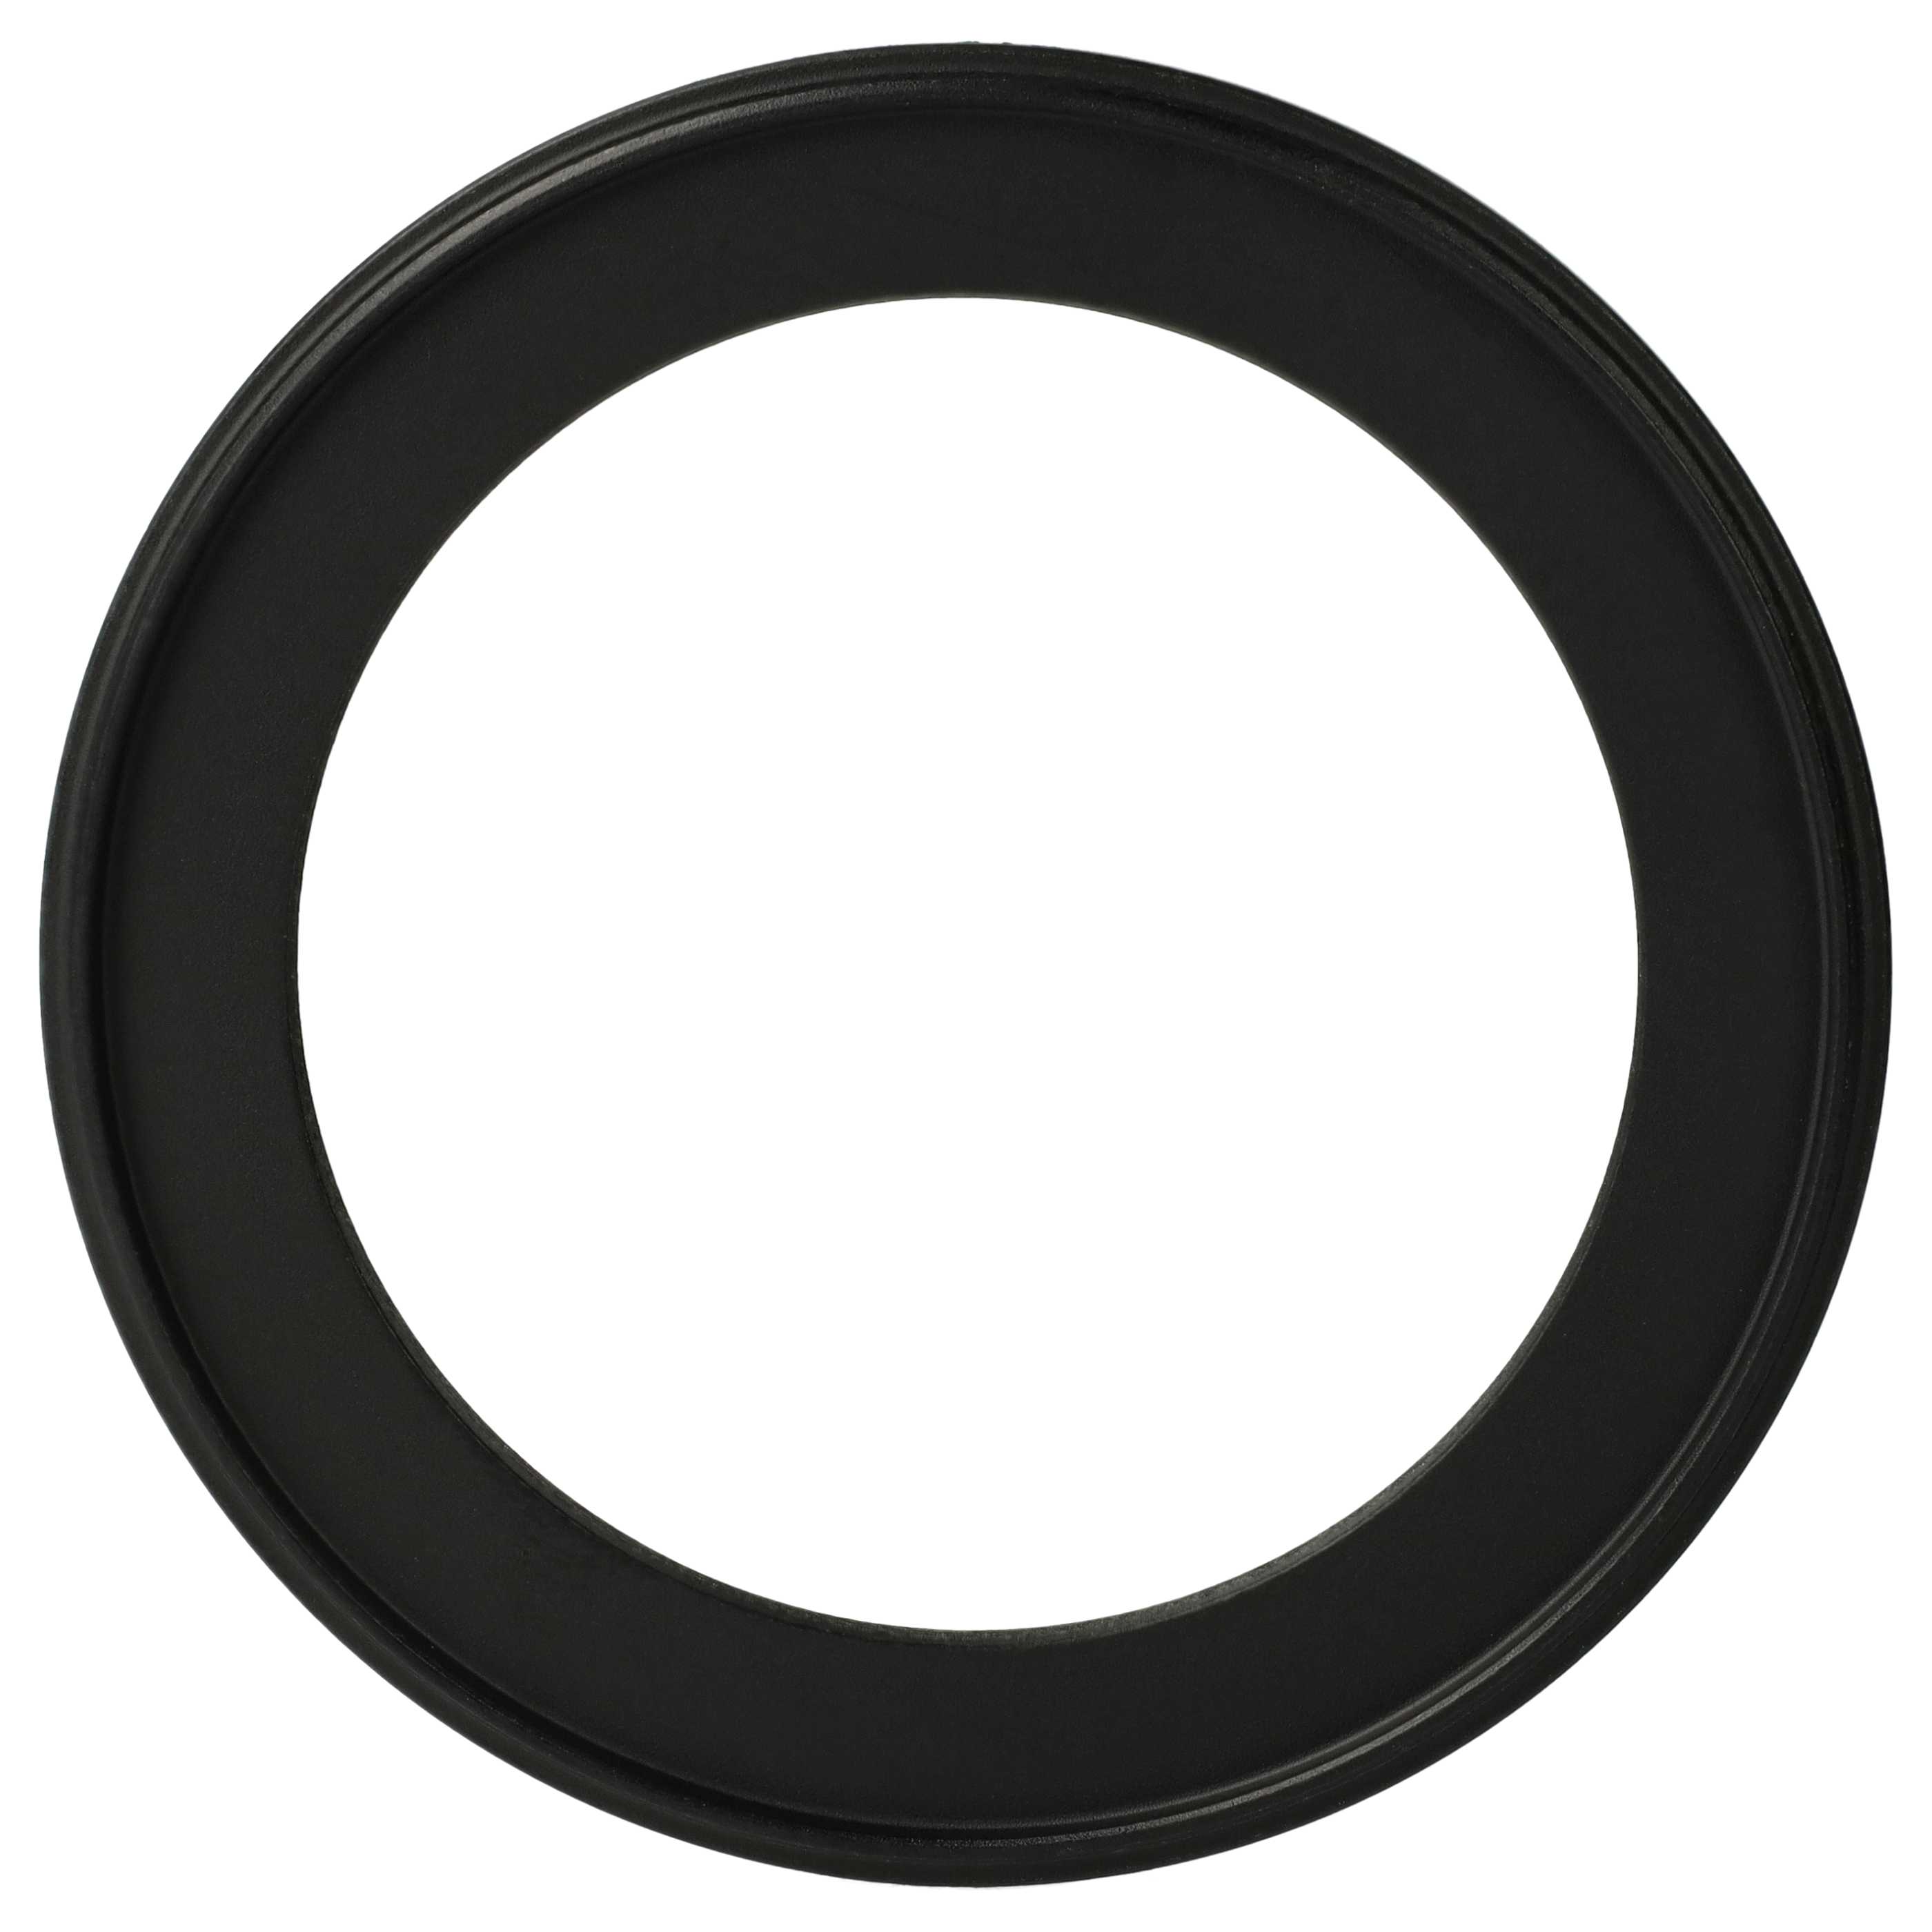 Redukcja filtrowa adapter Step-Down 82 mm - 62 mm pasująca do obiektywu - metal, czarny